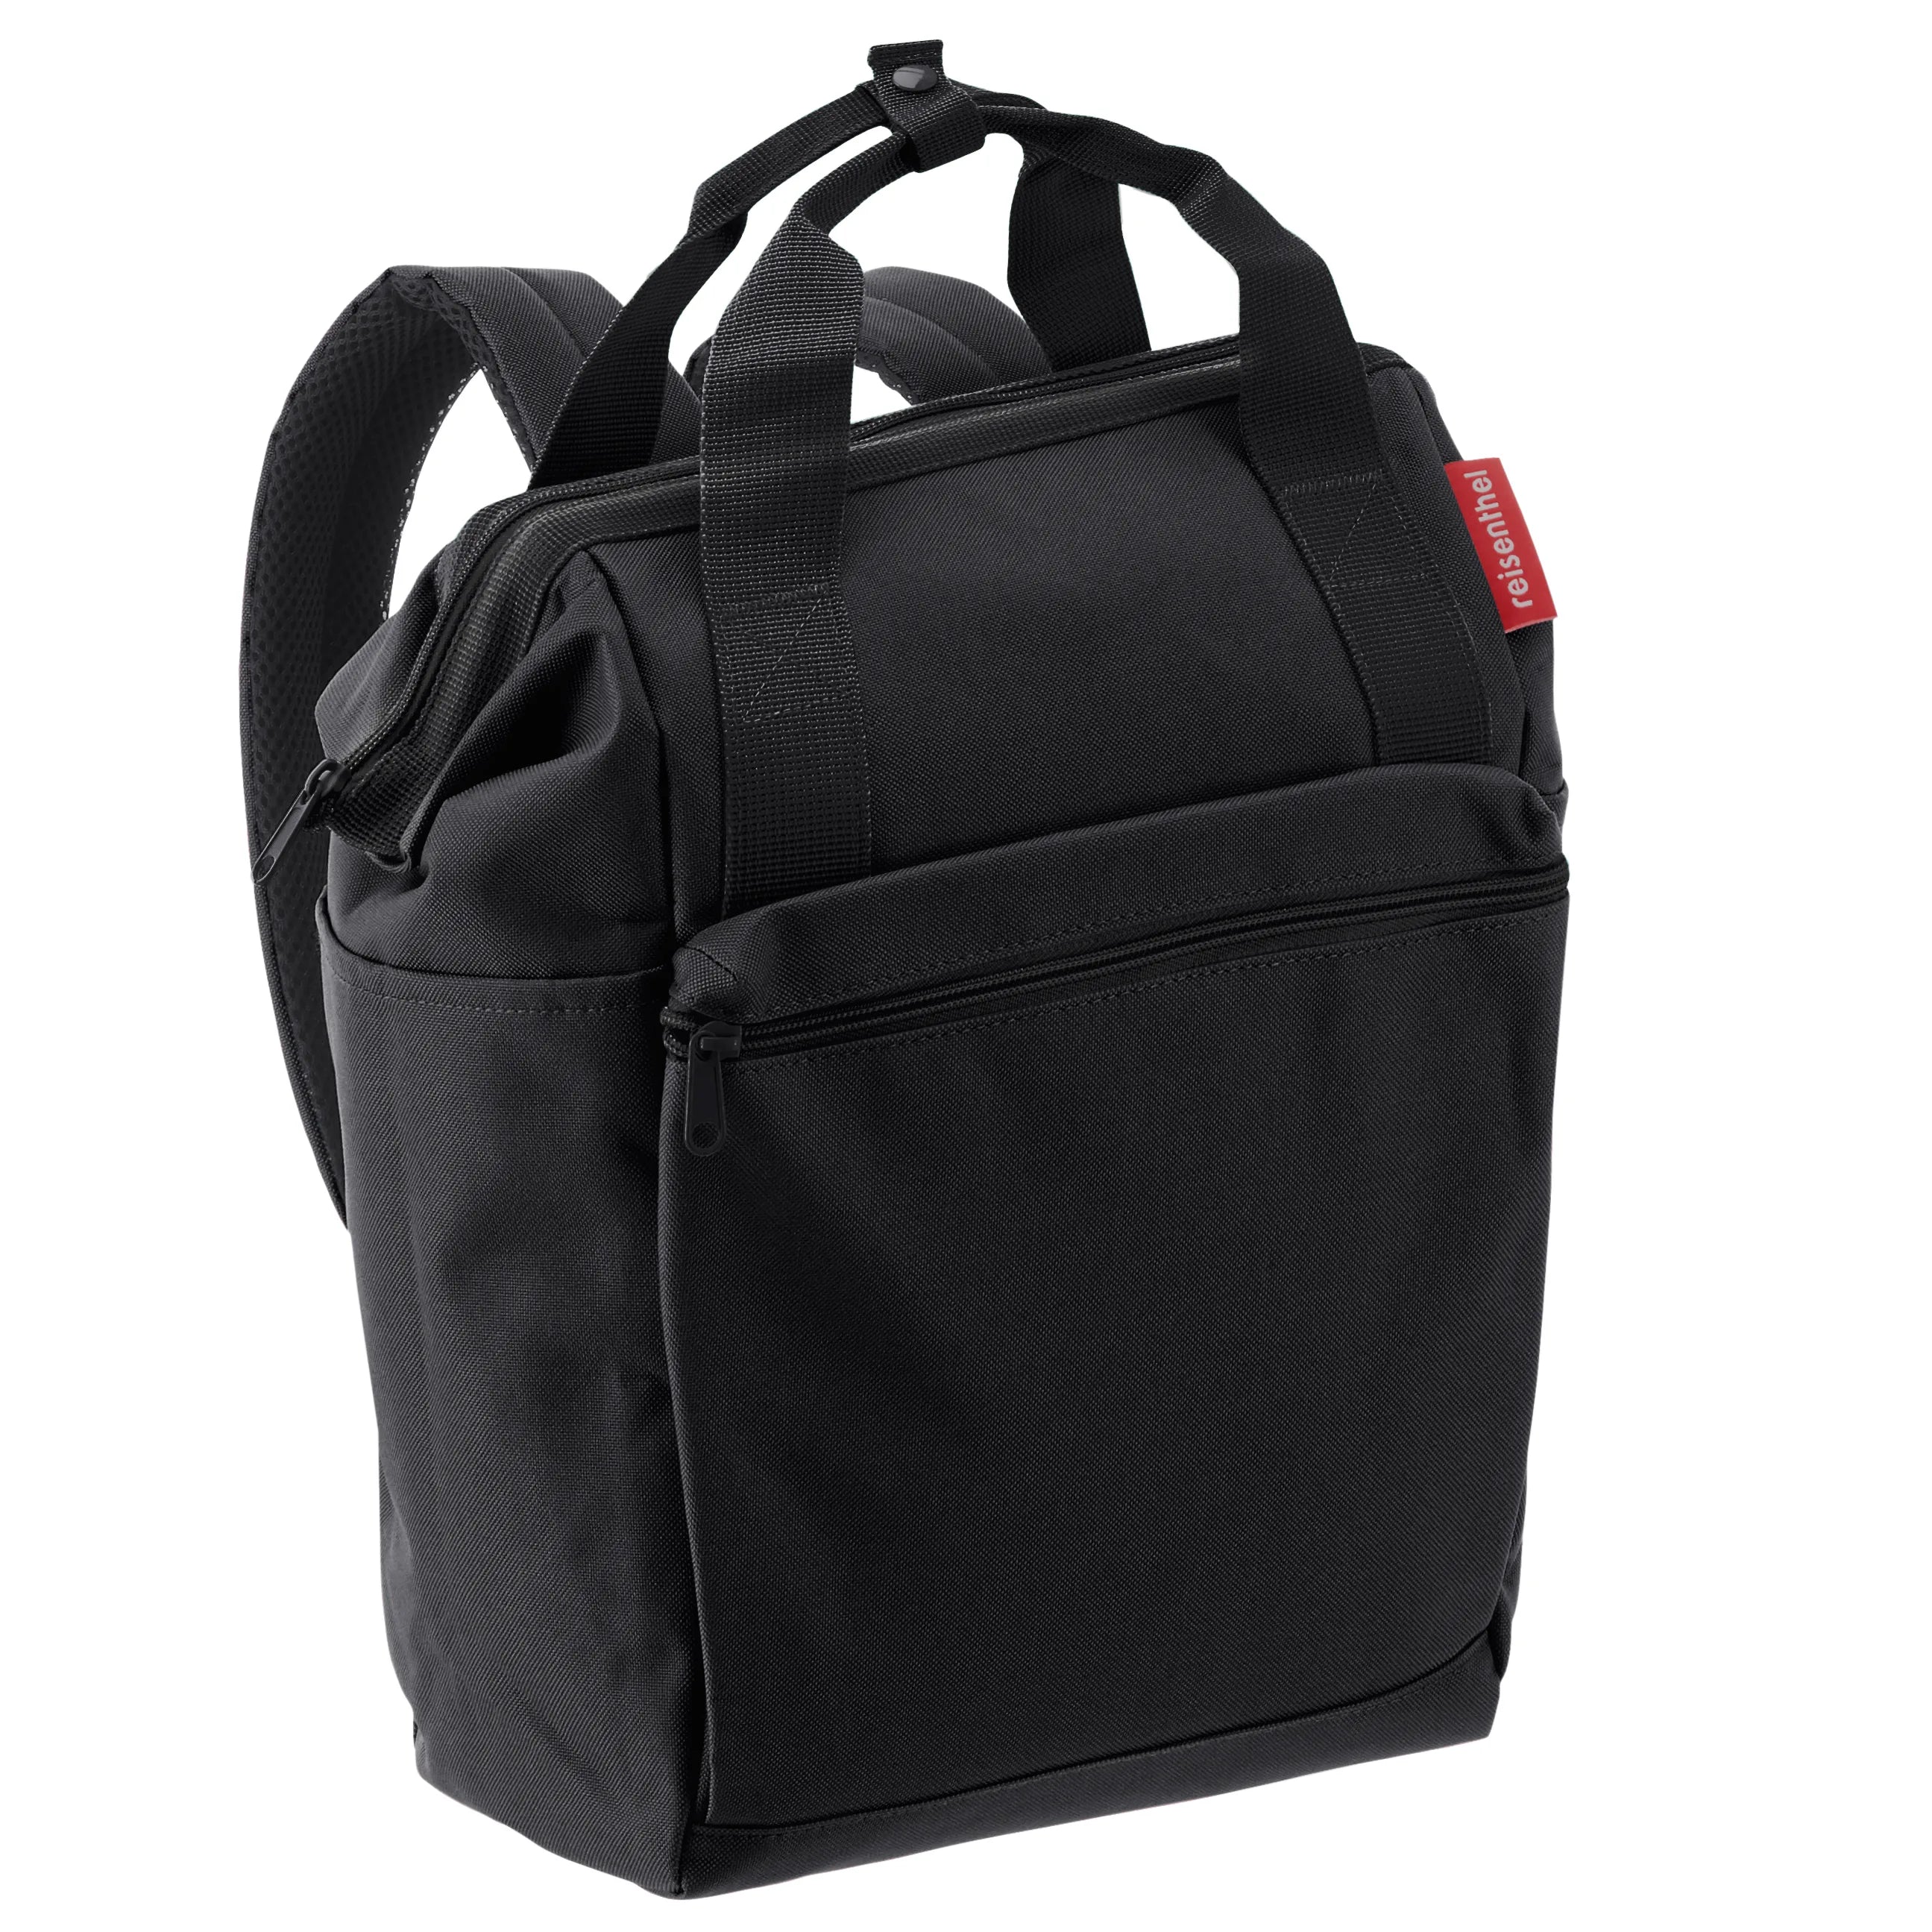 Reisenthel Travelling Allrounder R backpack 40 cm - black